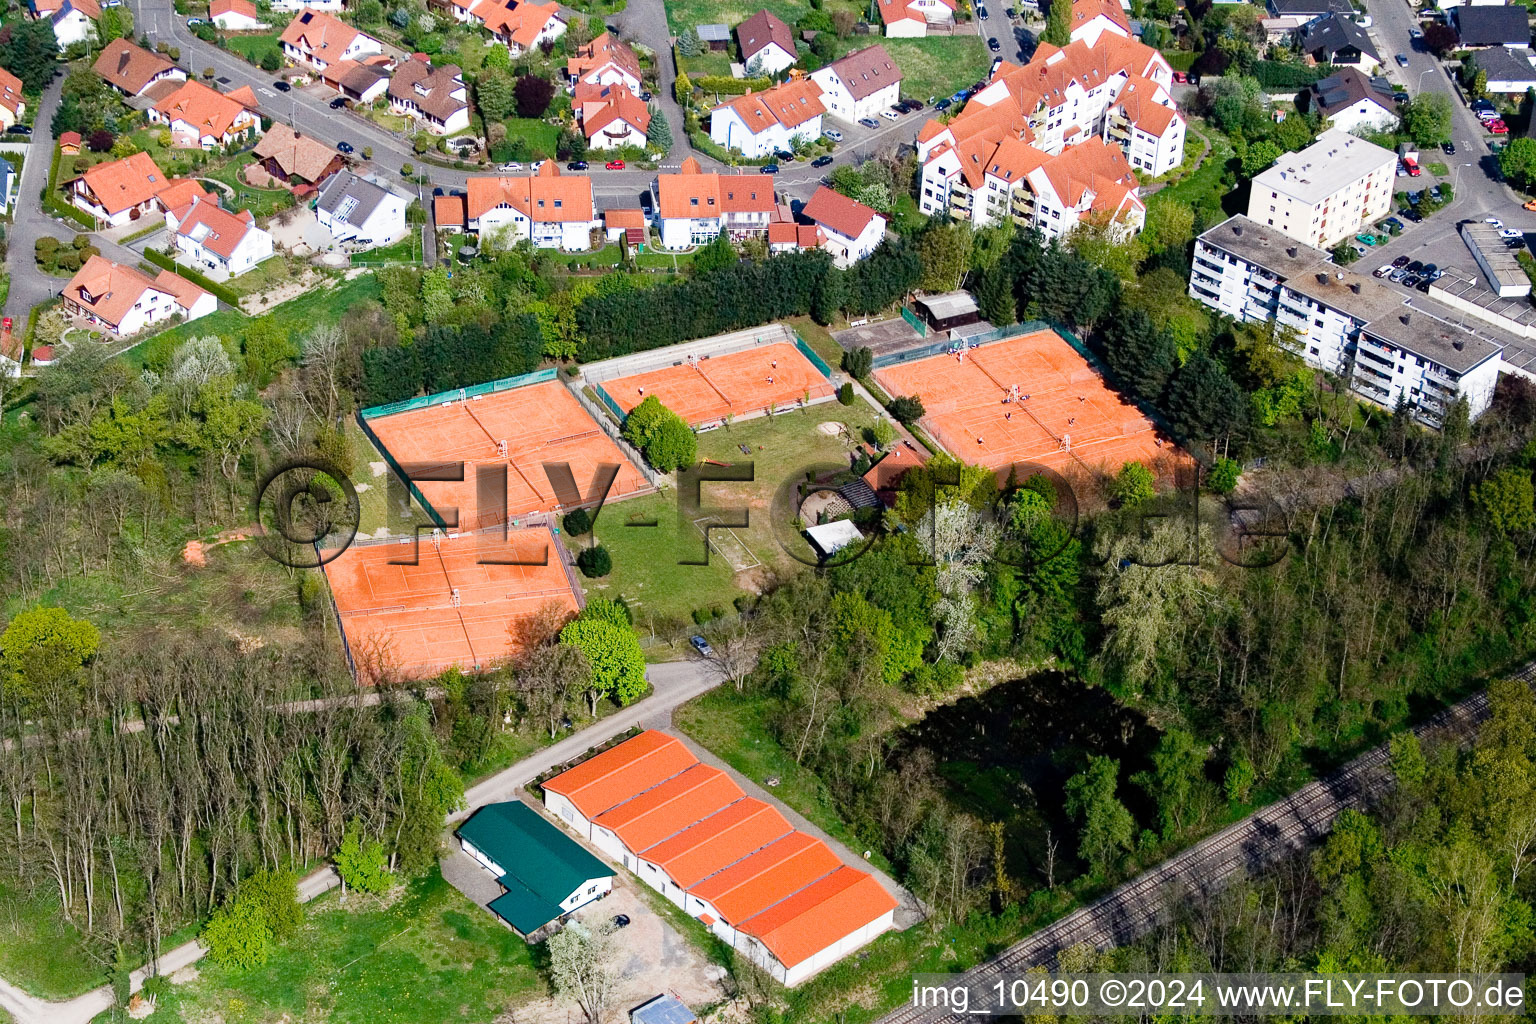 Club de tennis à Jockgrim dans le département Rhénanie-Palatinat, Allemagne hors des airs